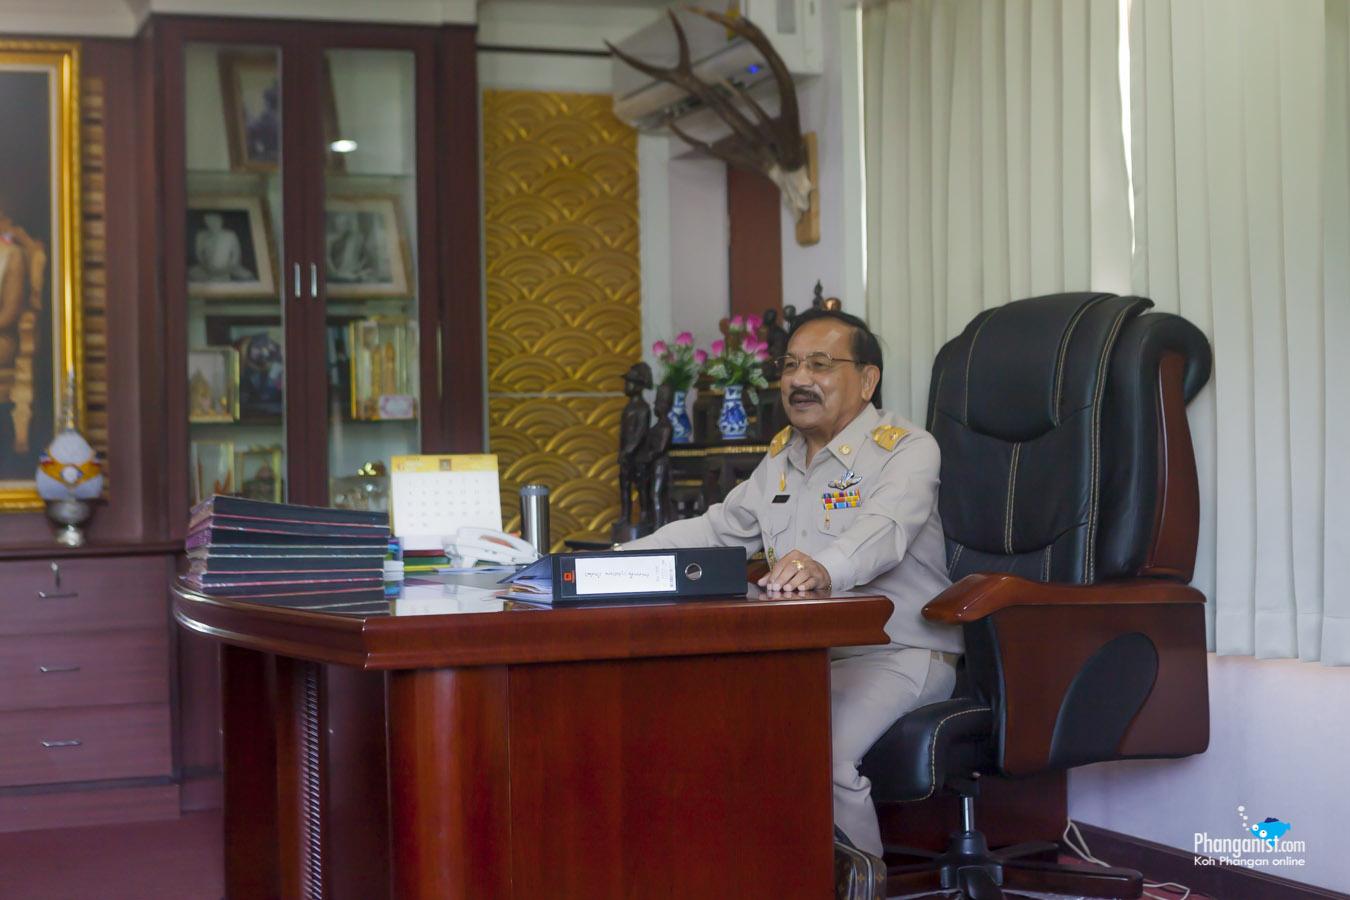 Mr. Kaaw - The Mayor of Koh Phangan.